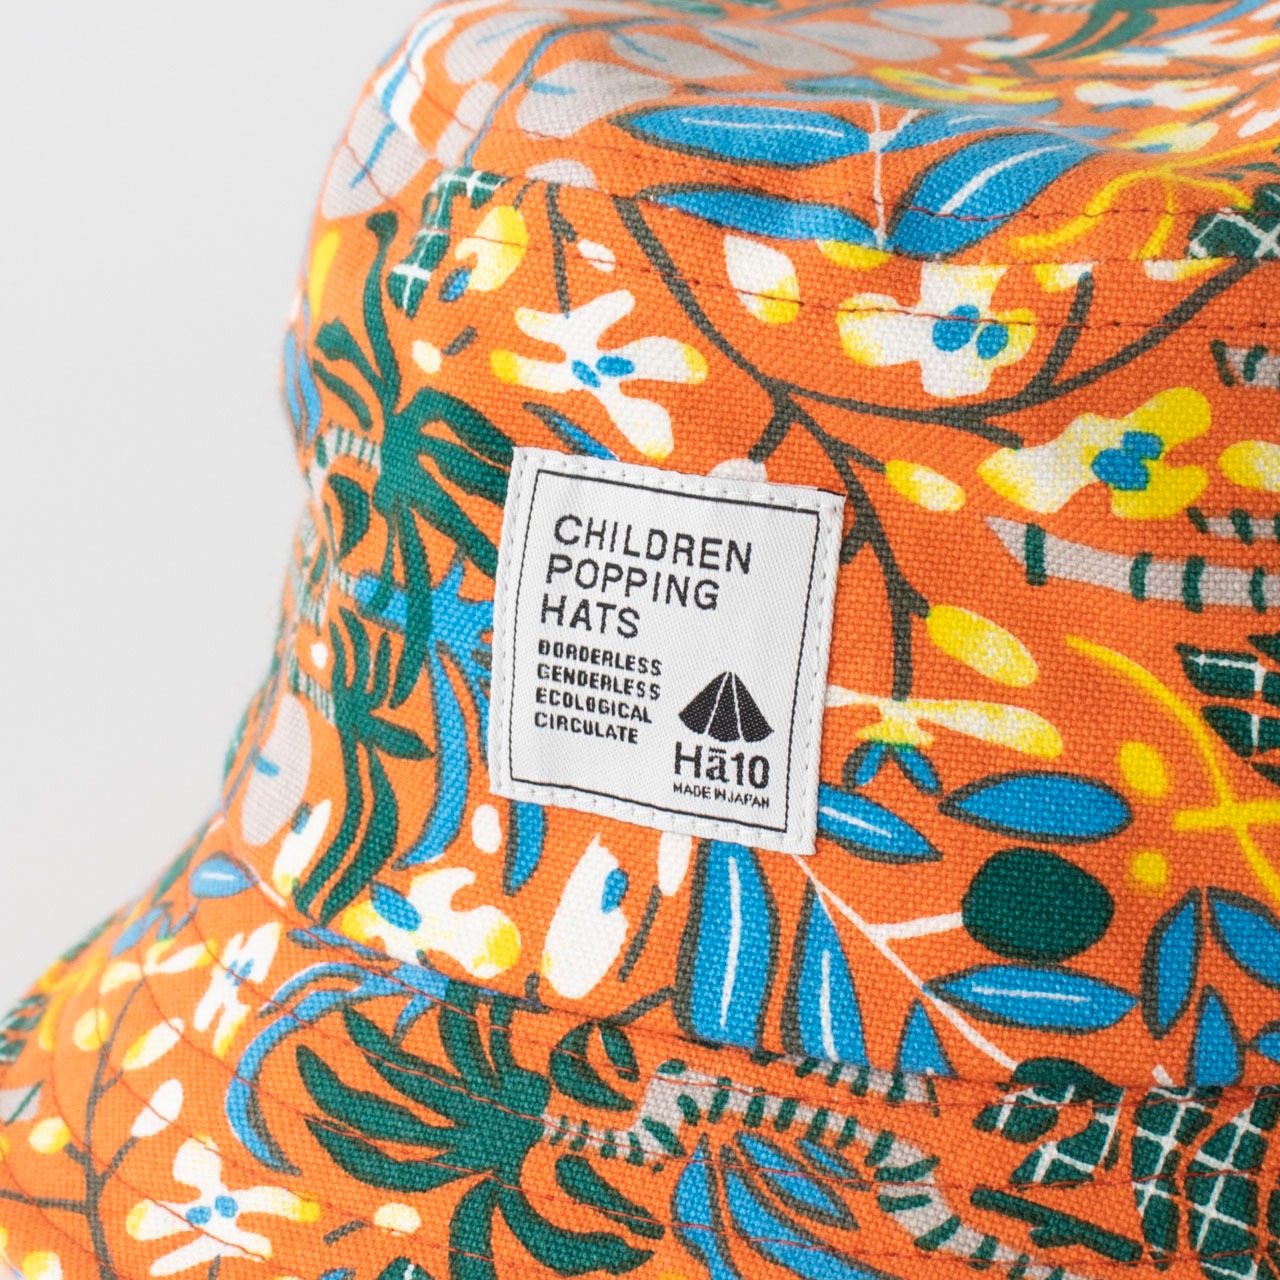 バケットハット【オレンジ】54cm ブランド 子供帽子  ベビー帽子 キッズハット キッズキャップ 紫外線対策 日本製 出産祝い